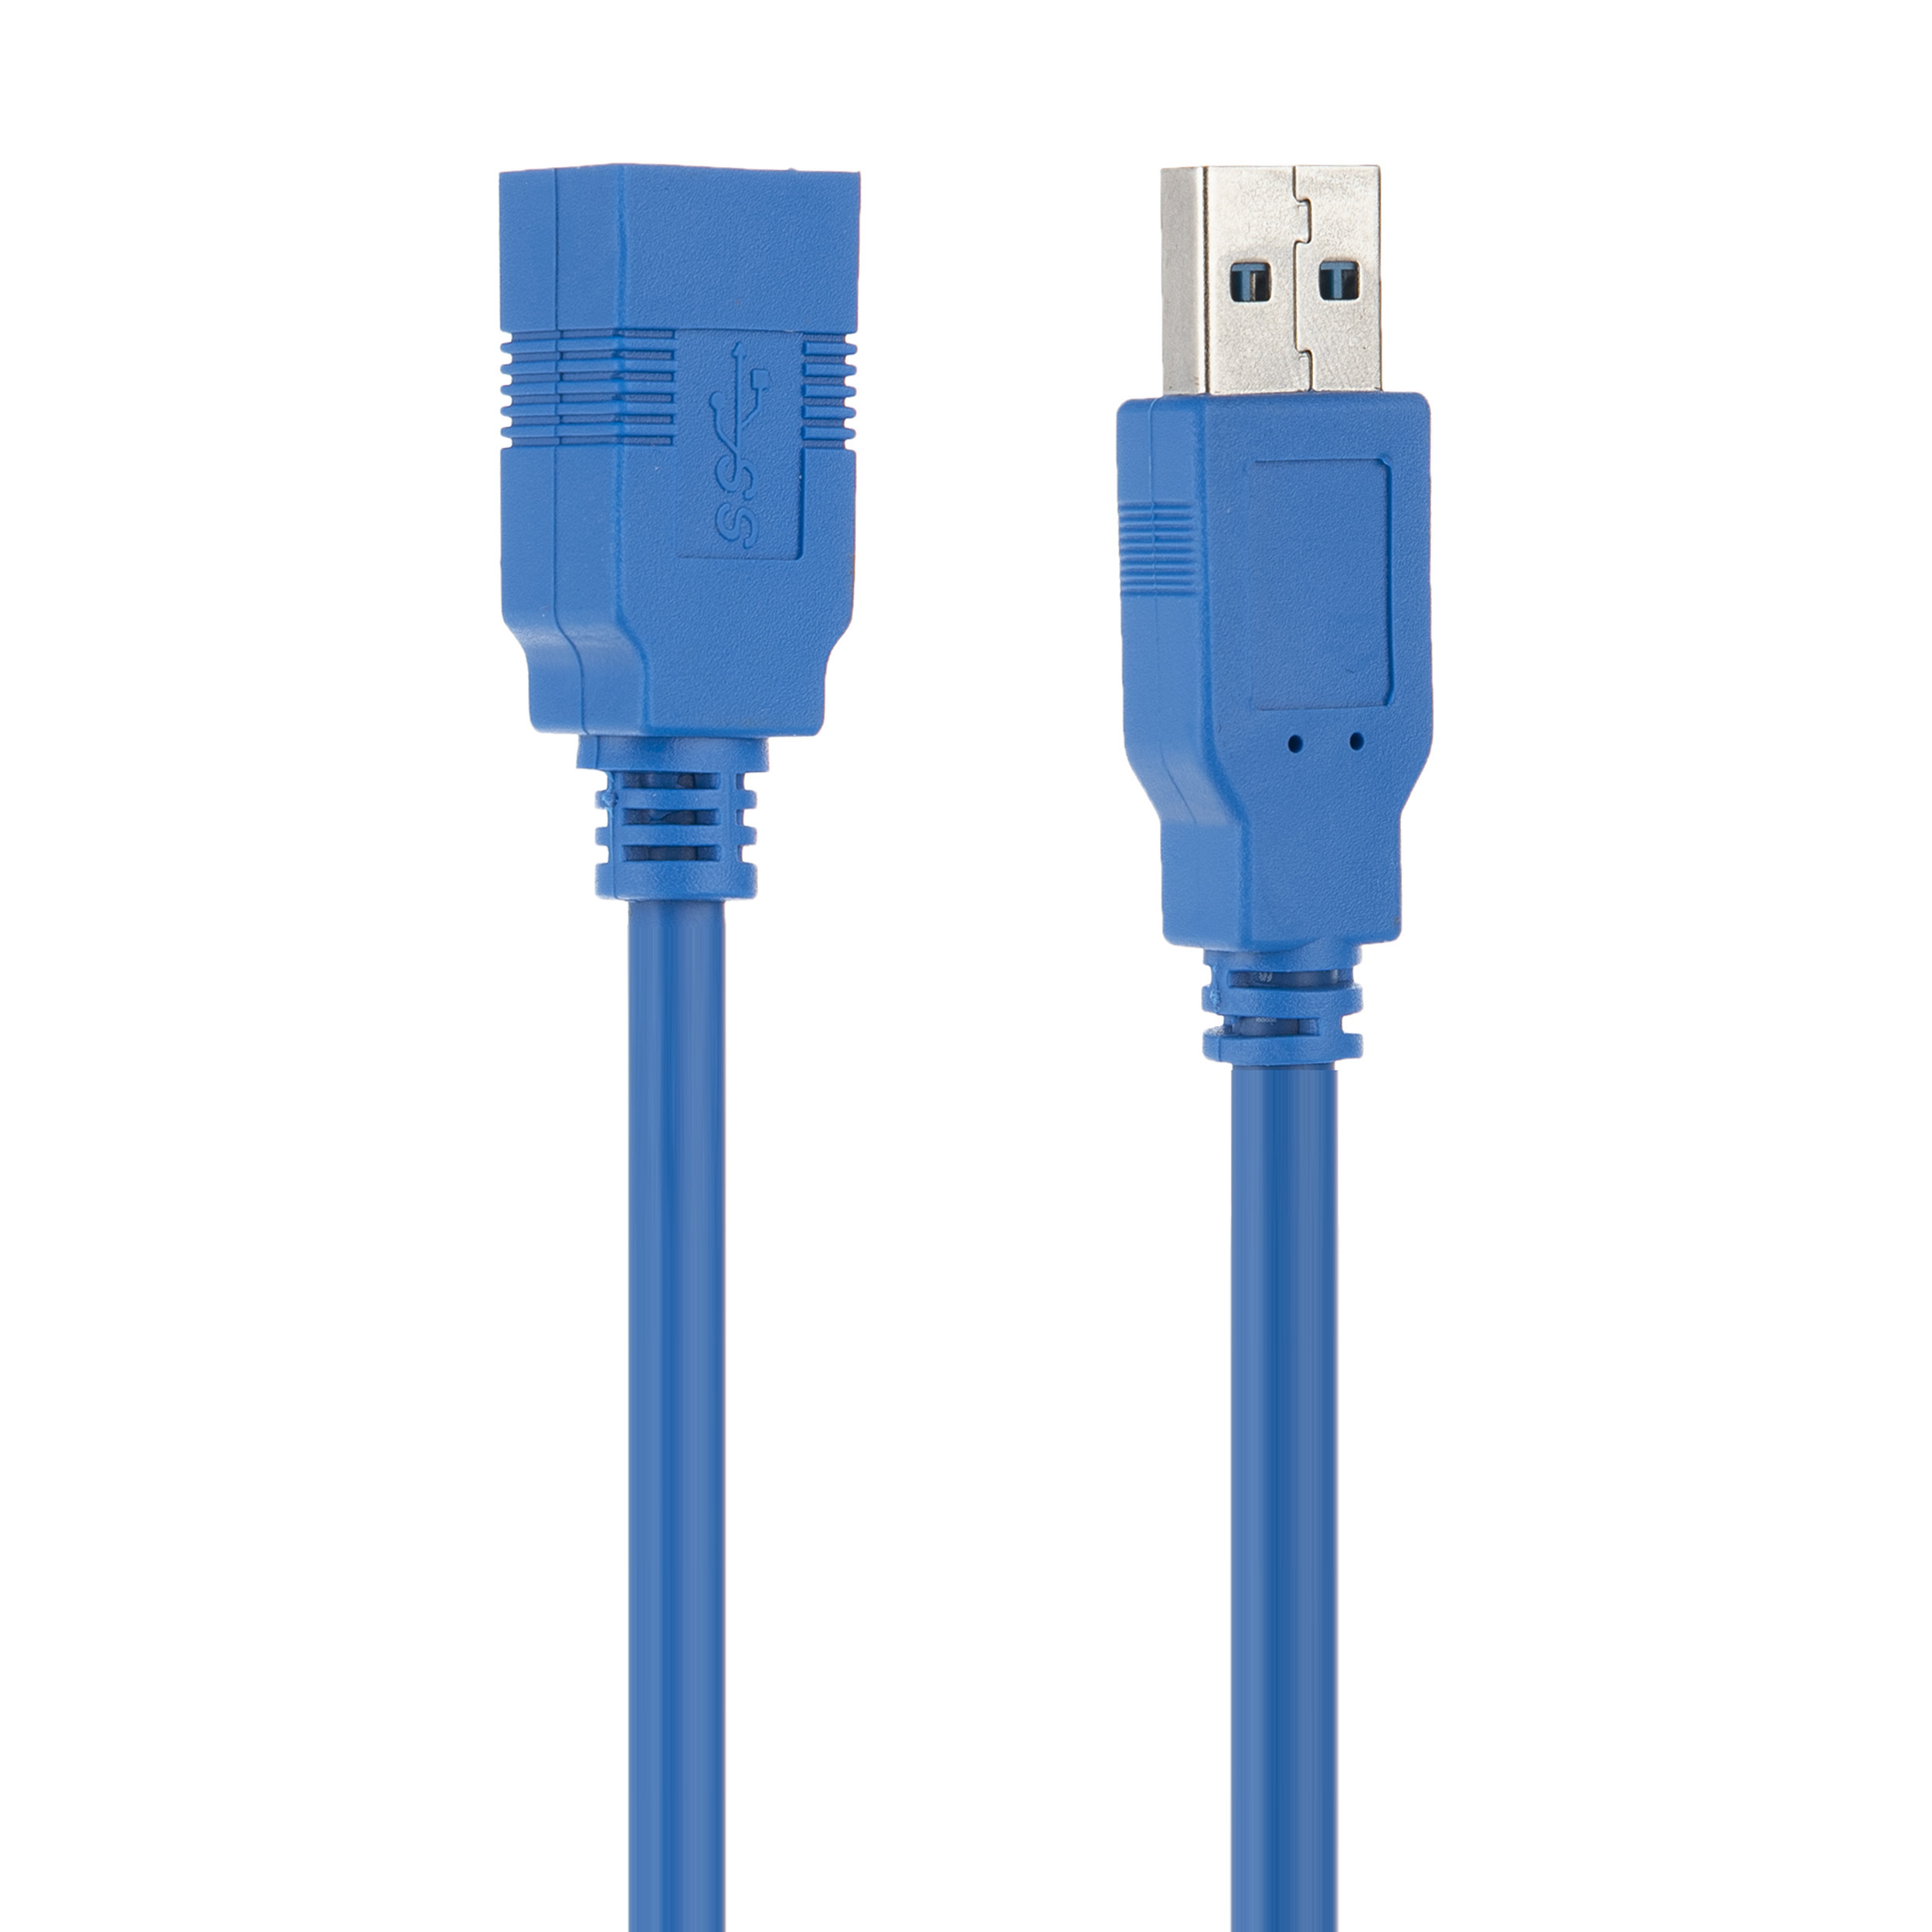 کابل افزایش طول USB 3.0 ورسد کد 968 طول 1.5 متر